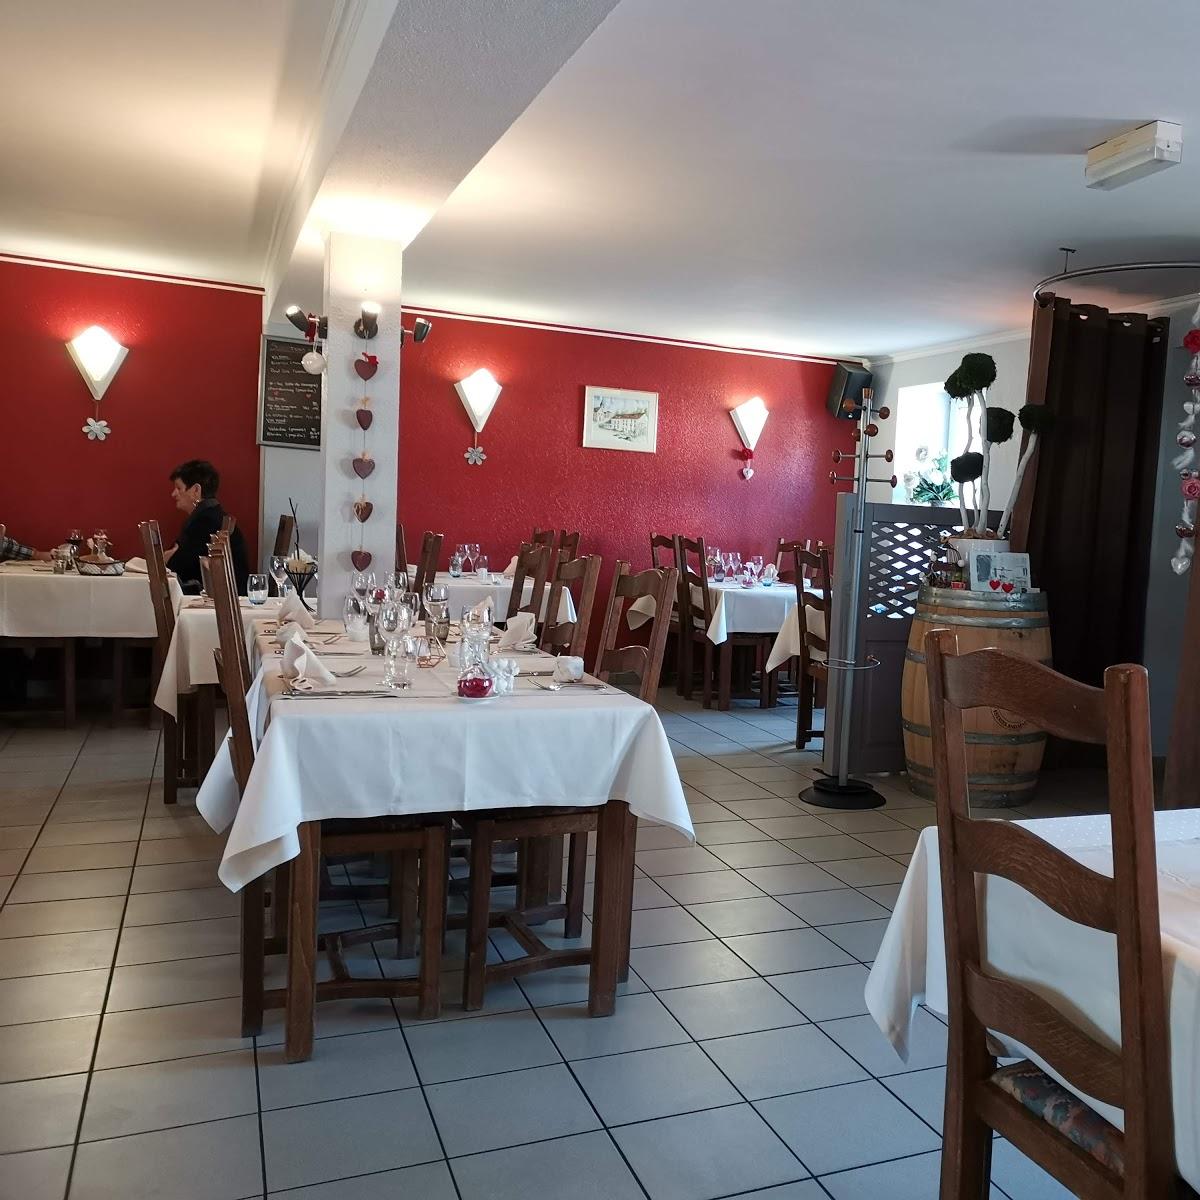 Restaurant "Clos de la Ravine" in Apach